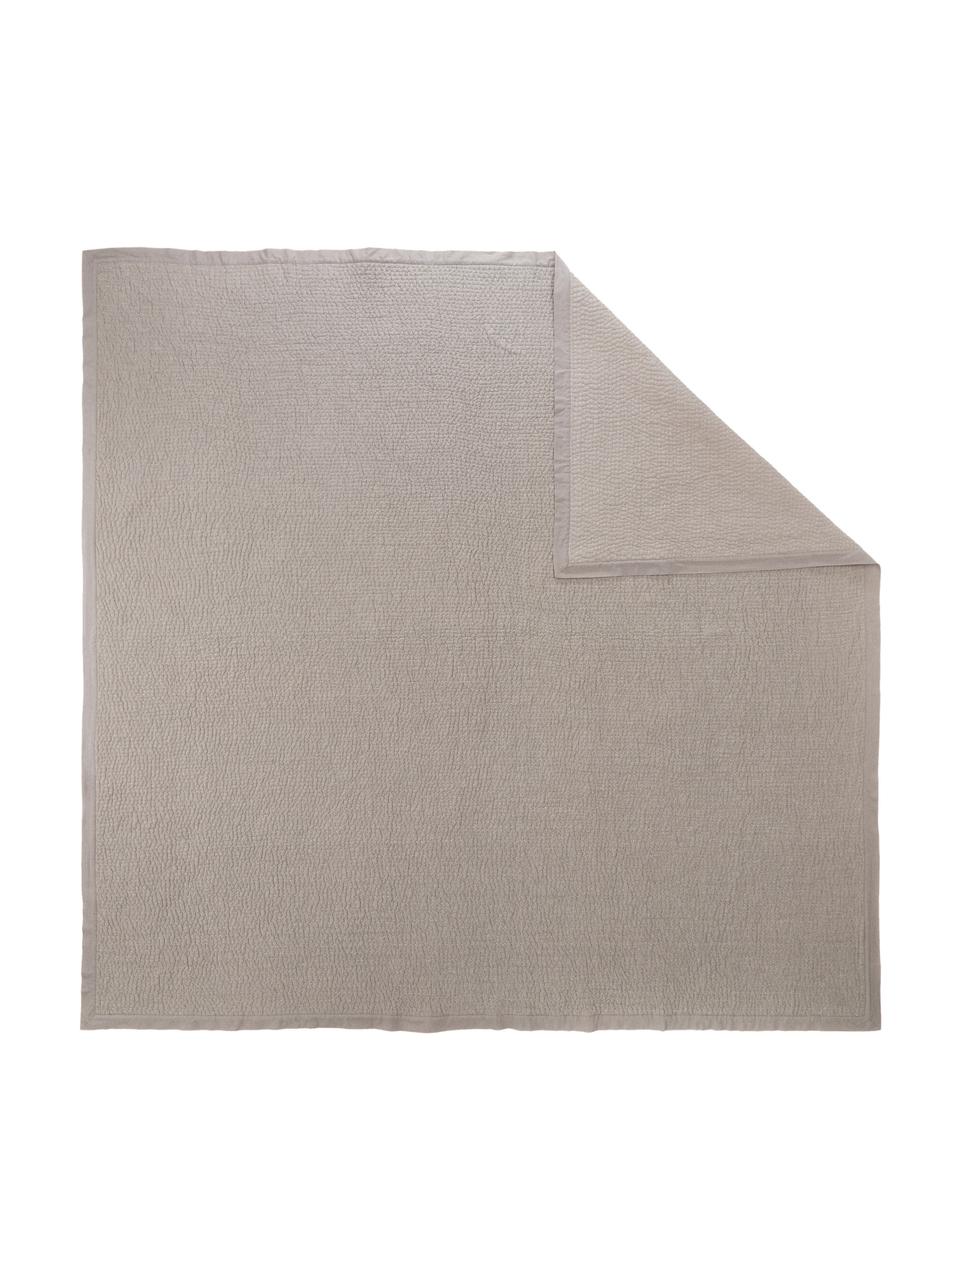 Bedsprei Stripes van katoen in grijs, Bekleding: 100% katoen, Grijs, B 180 x L 250 cm (voor bedden tot 140 x 200)